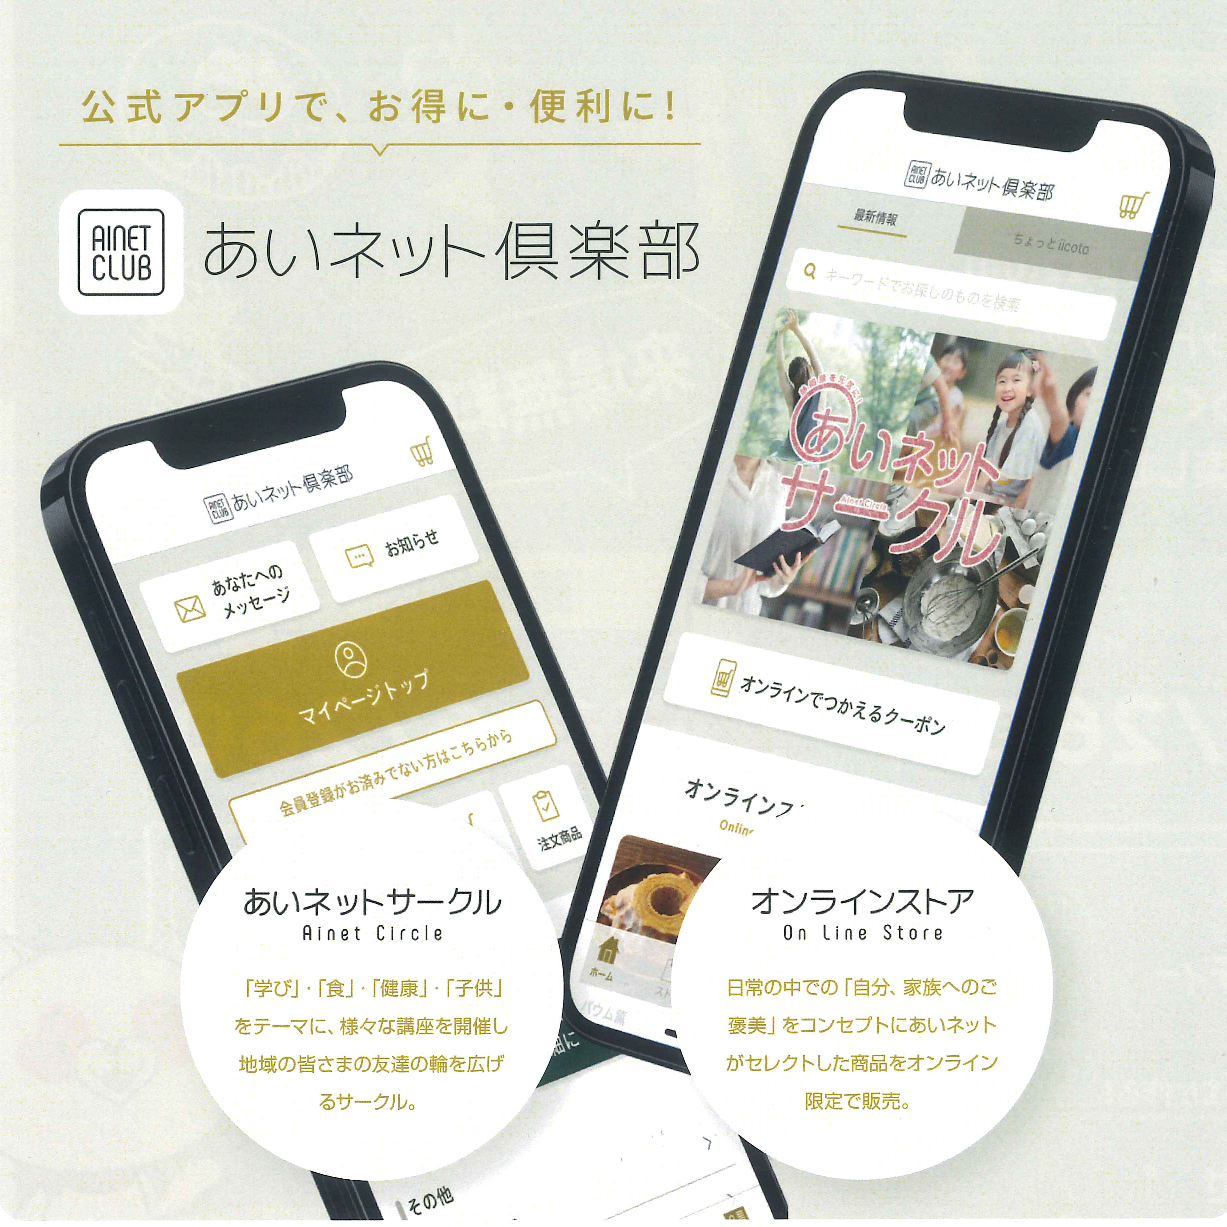 【あいネット倶楽部】あいネット公式アプリリリース